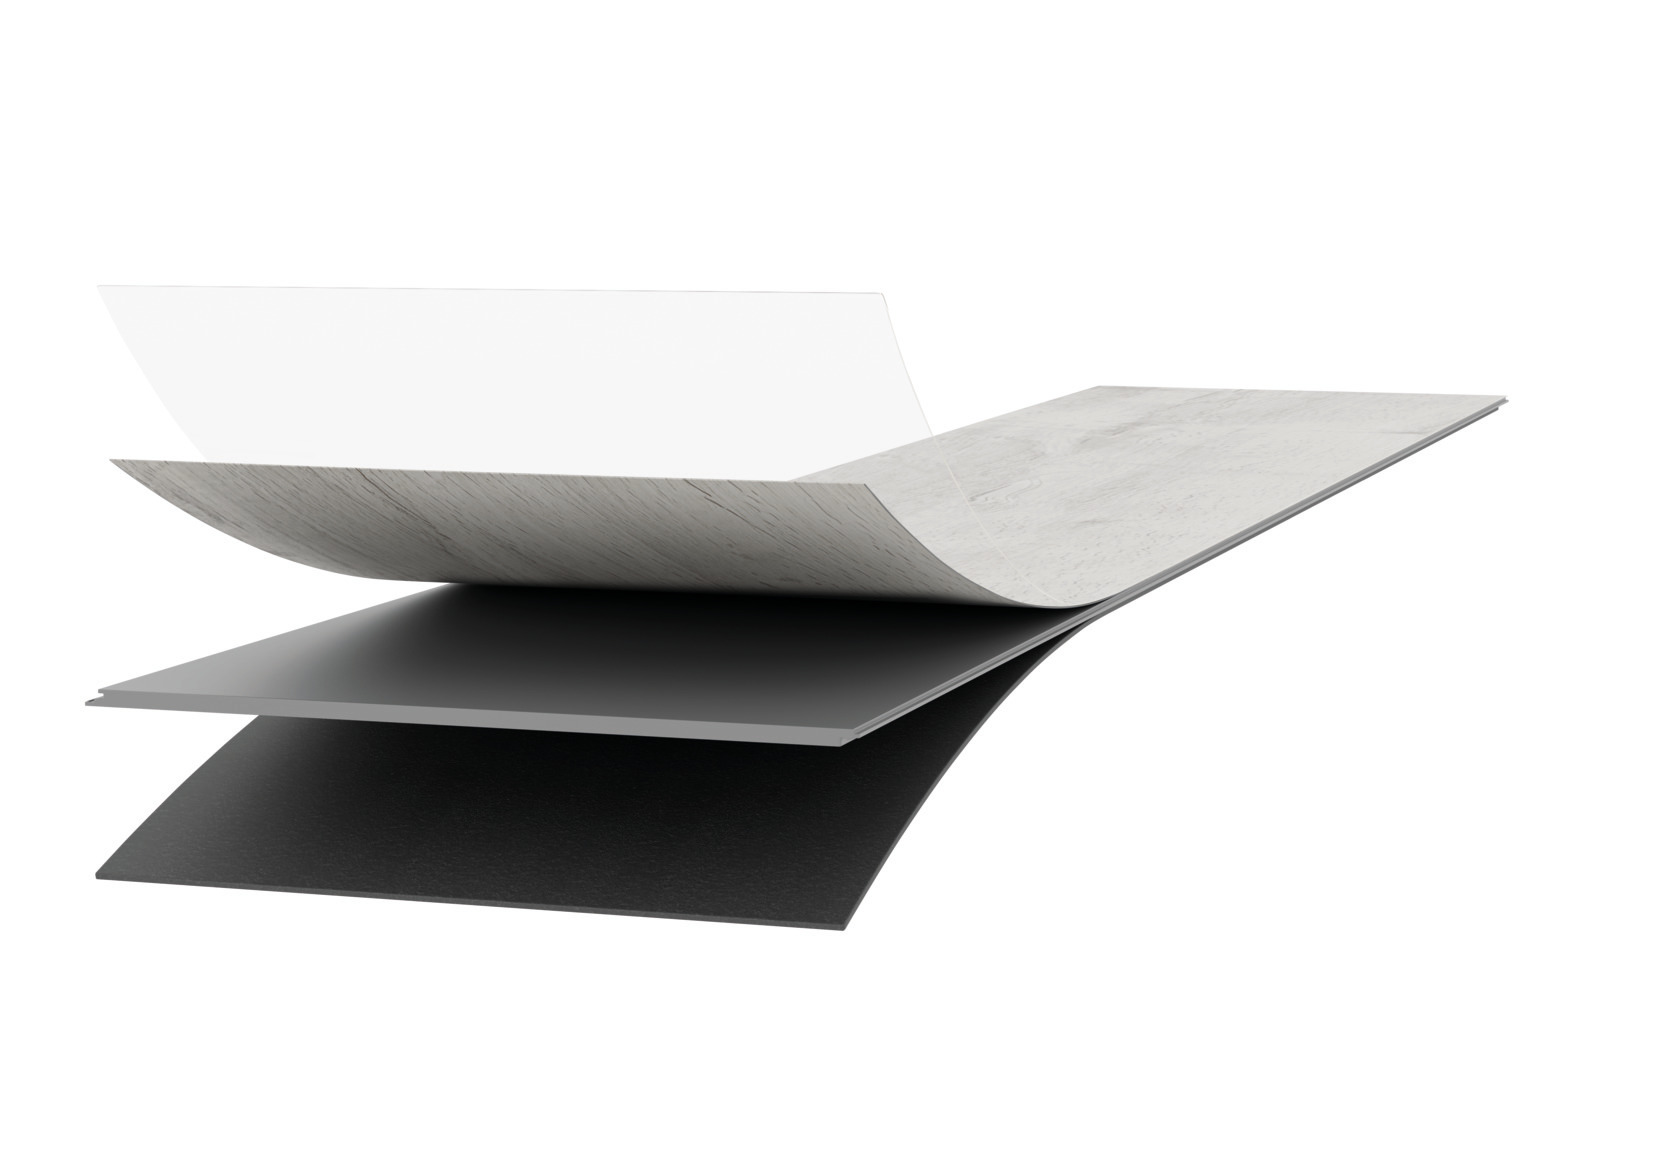 a. Surface de vinyle multicouche (couche d'usure 0,55 mm) avec vernissage Excimer
b. Couche de décor
c. Support spécial de polymère rigide - étanche
d. Avec isolation phonique de 1 mm (mousse XPS)